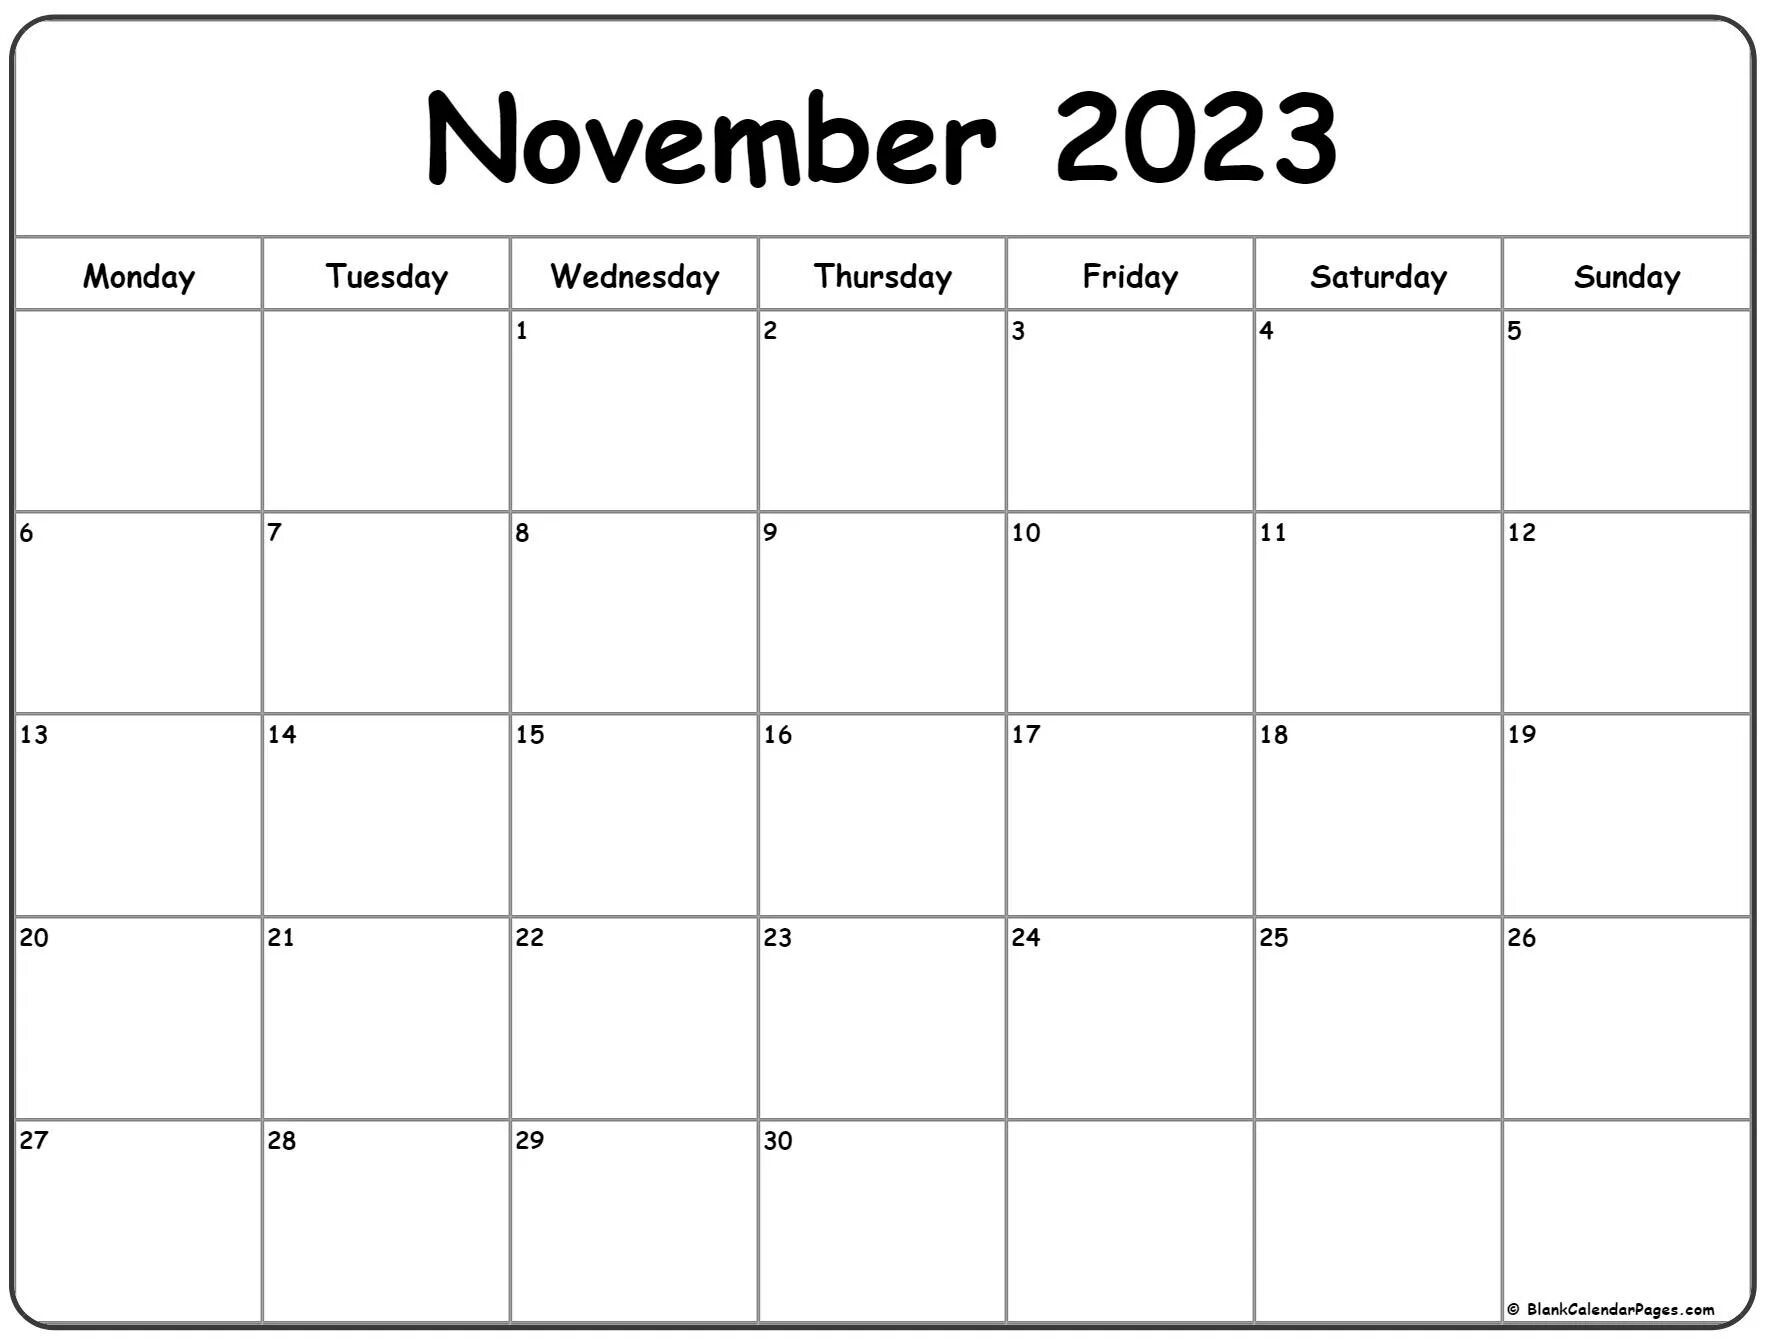 Календарь на май 2022 года. November 2021 календарь. Календарь июль 2022. Апрель календарь пустой. Расчет в декабре 2023